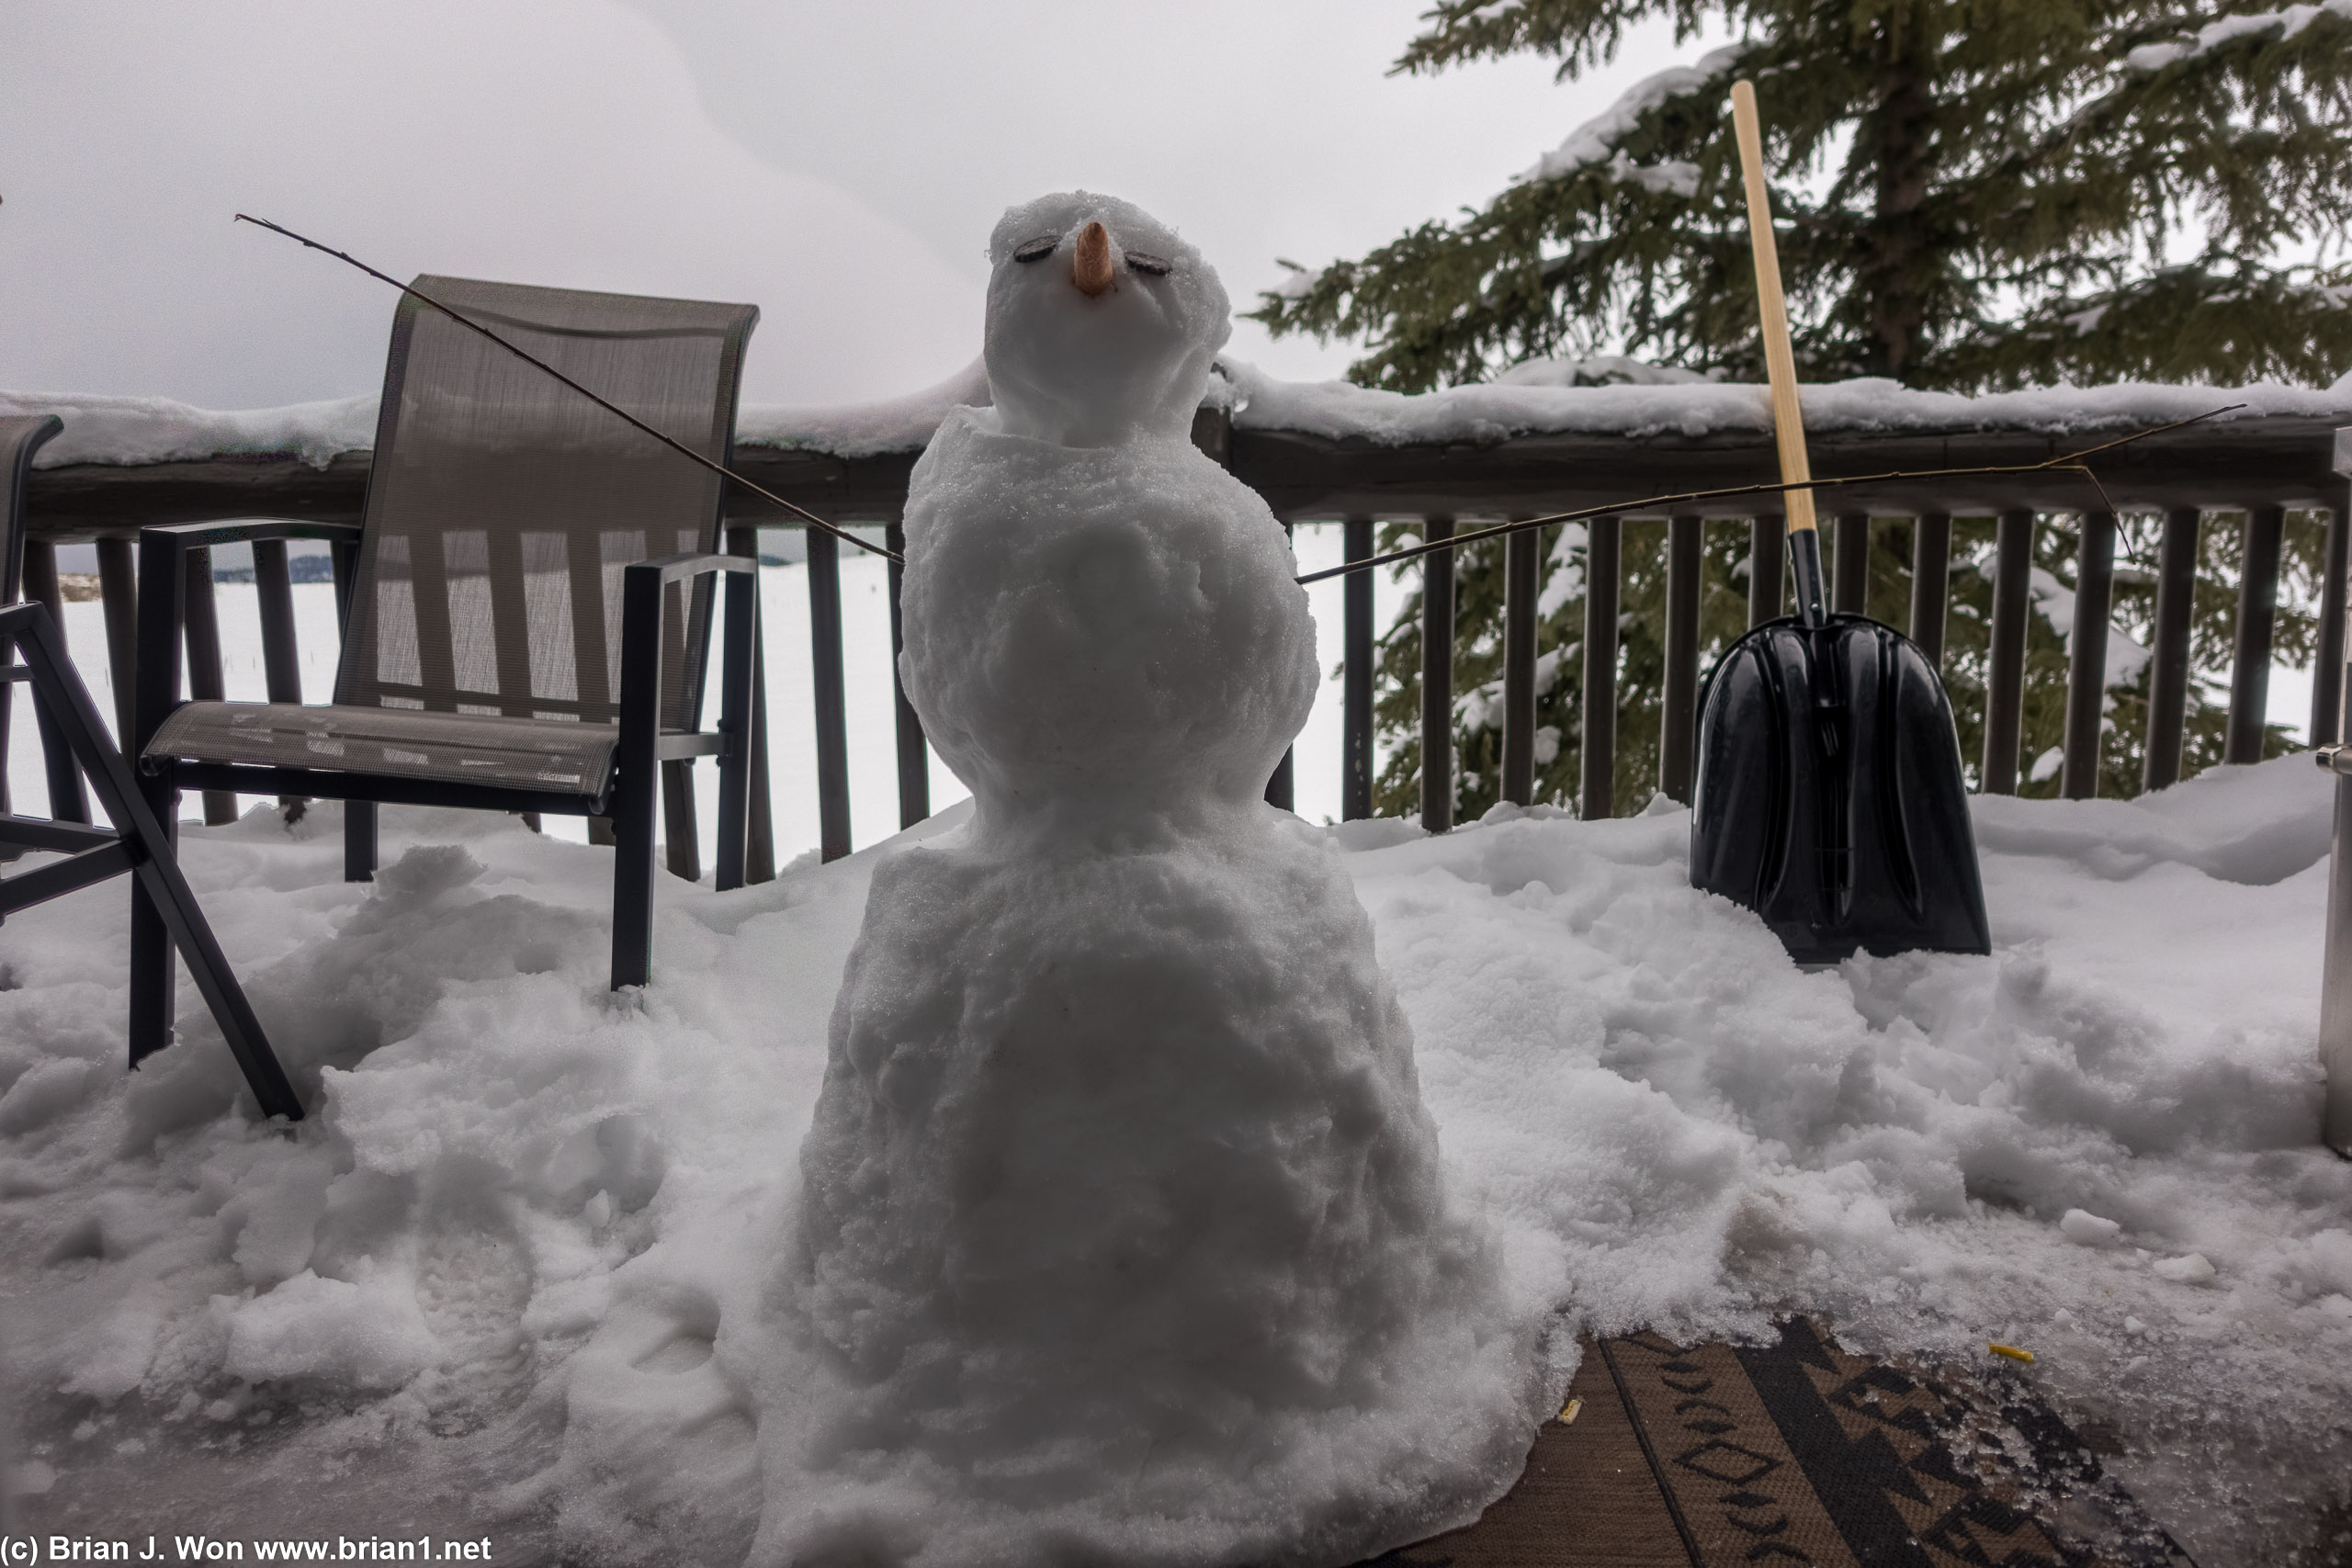 Snowman built by a previous guest.